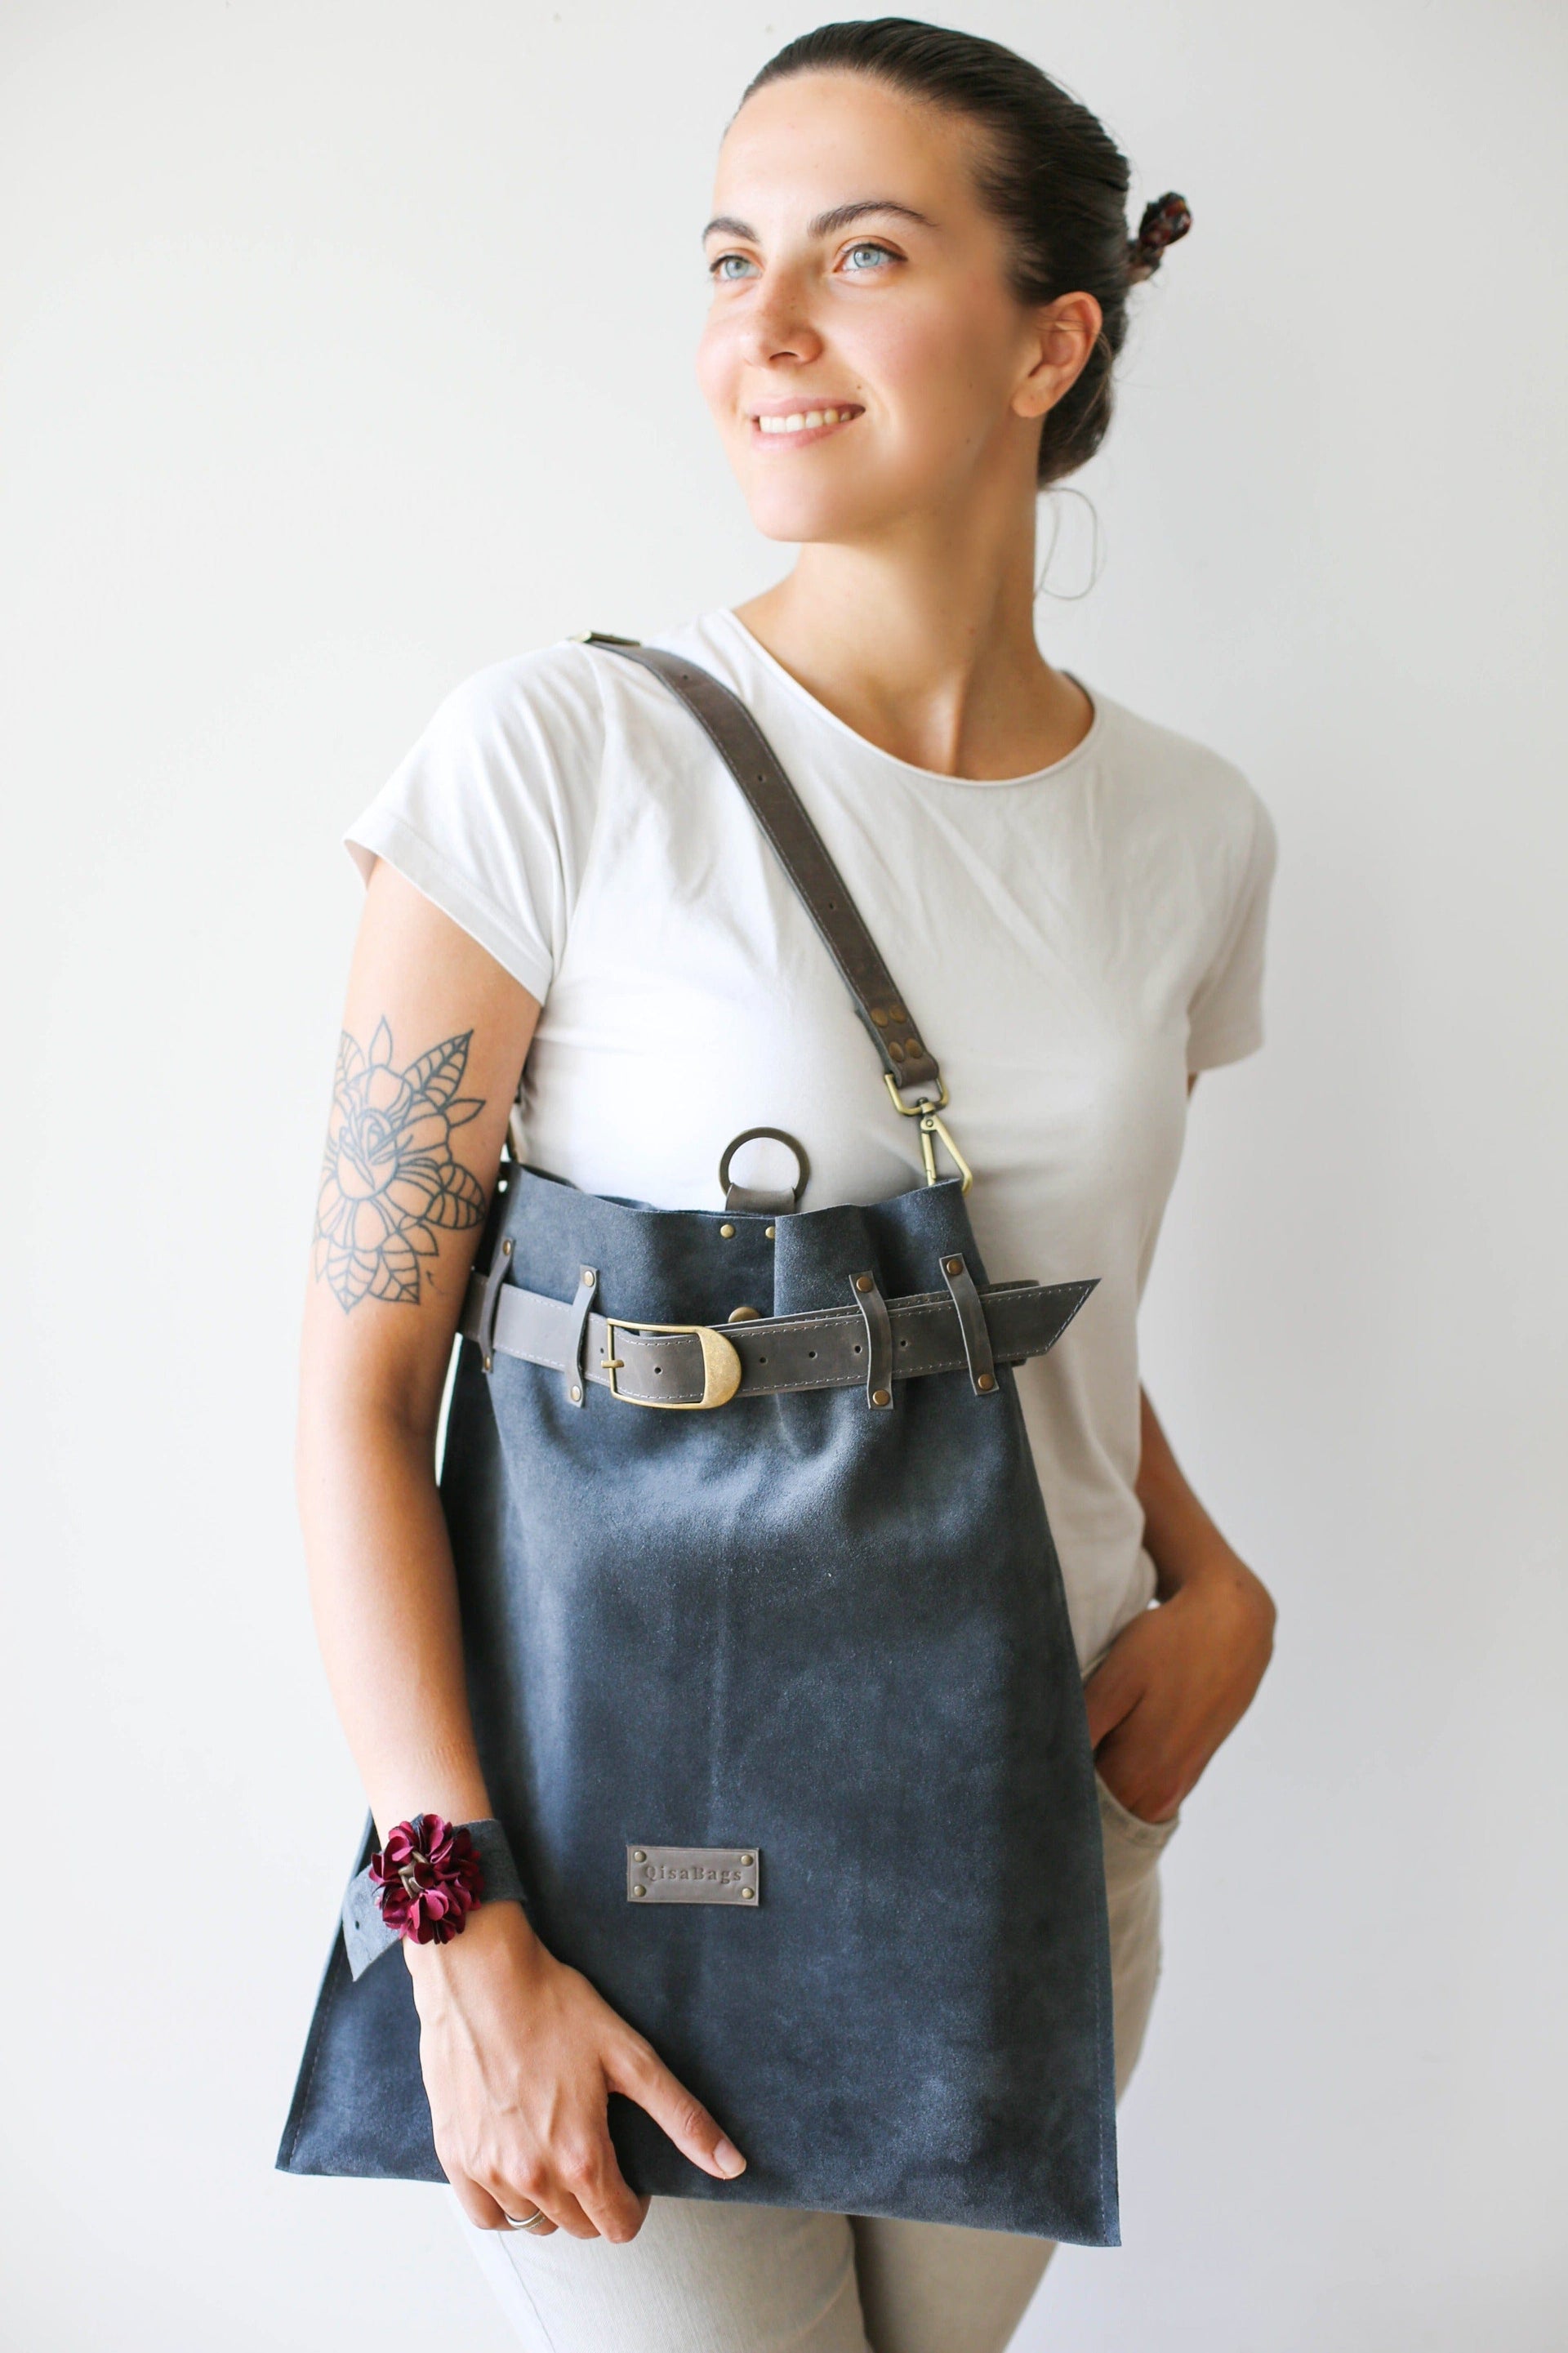 designer handbags for women